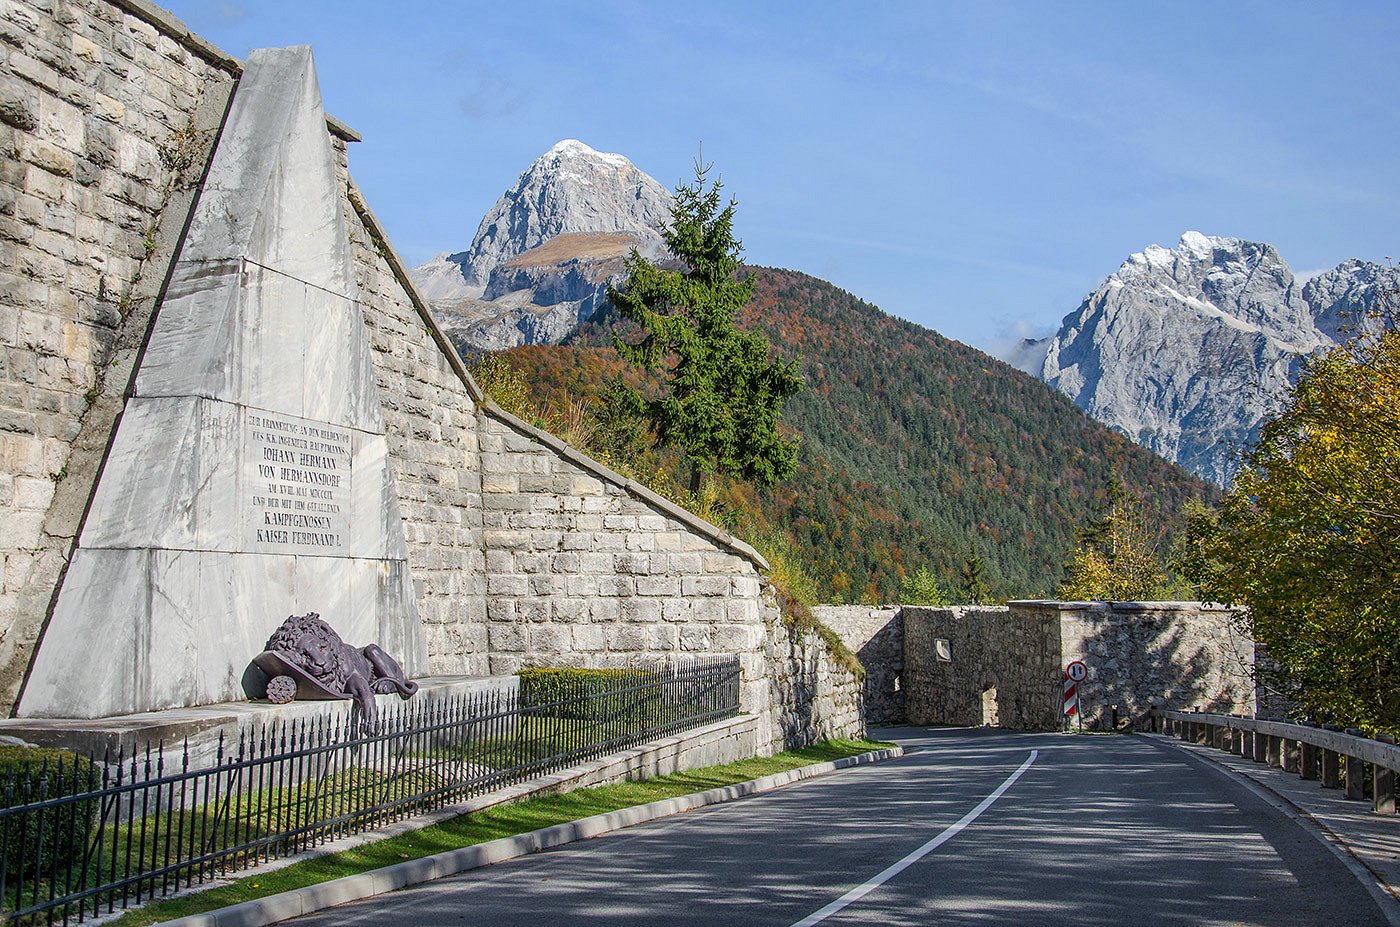 Monumento con la statua di un leone ferito lungo la strada per Bovec, sullo sfondo il monte Mangart